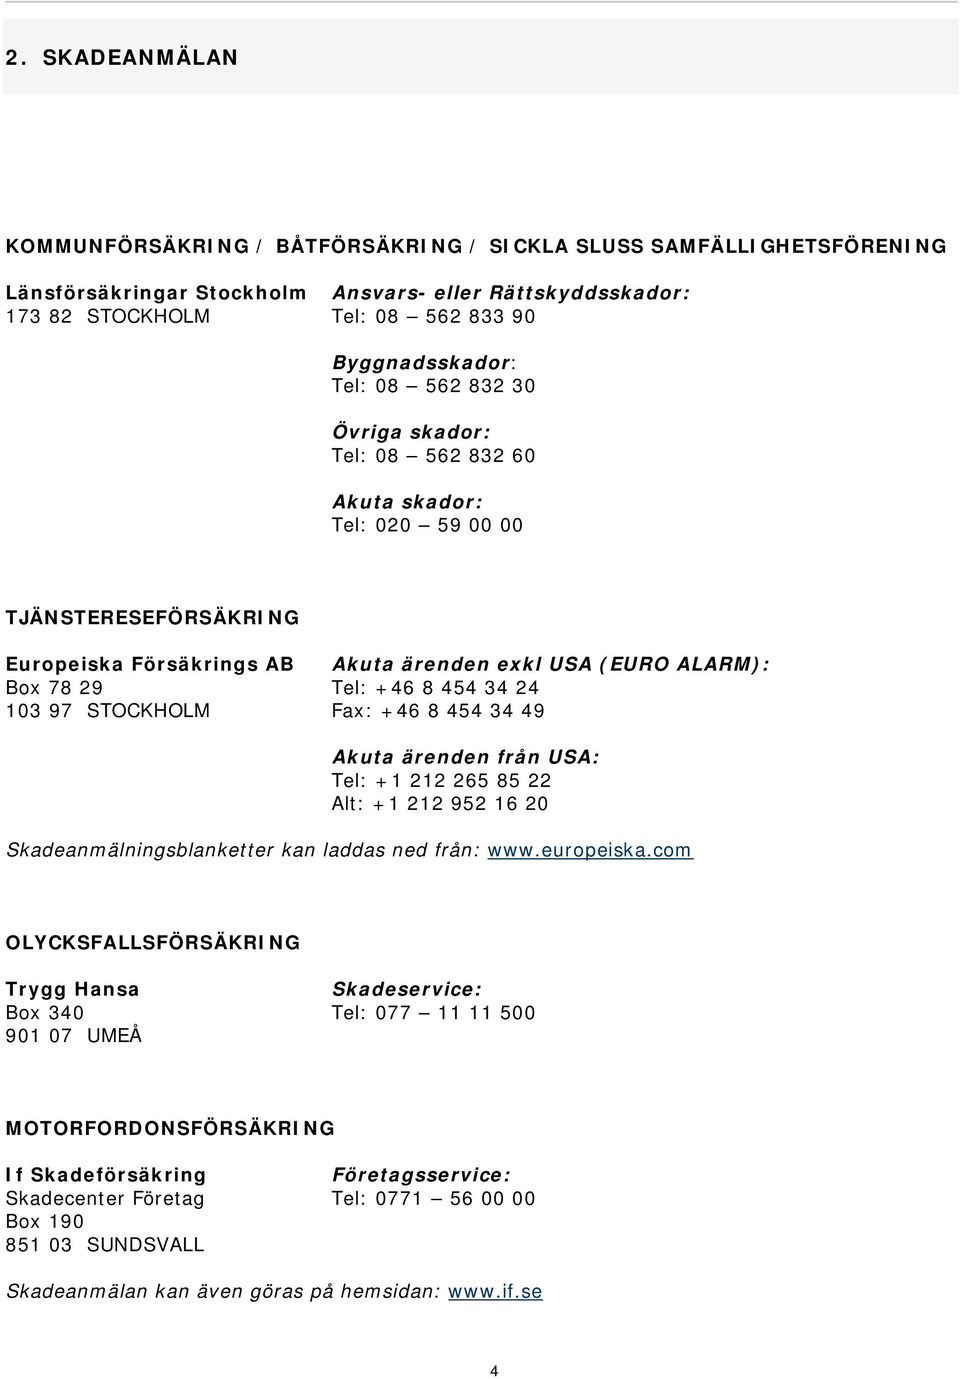 24 103 97 STOCKHOLM Fax: +46 8 454 34 49 Akuta ärenden från USA: Tel: +1 212 265 85 22 Alt: +1 212 952 16 20 Skadeanmälningsblanketter kan laddas ned från: www.europeiska.